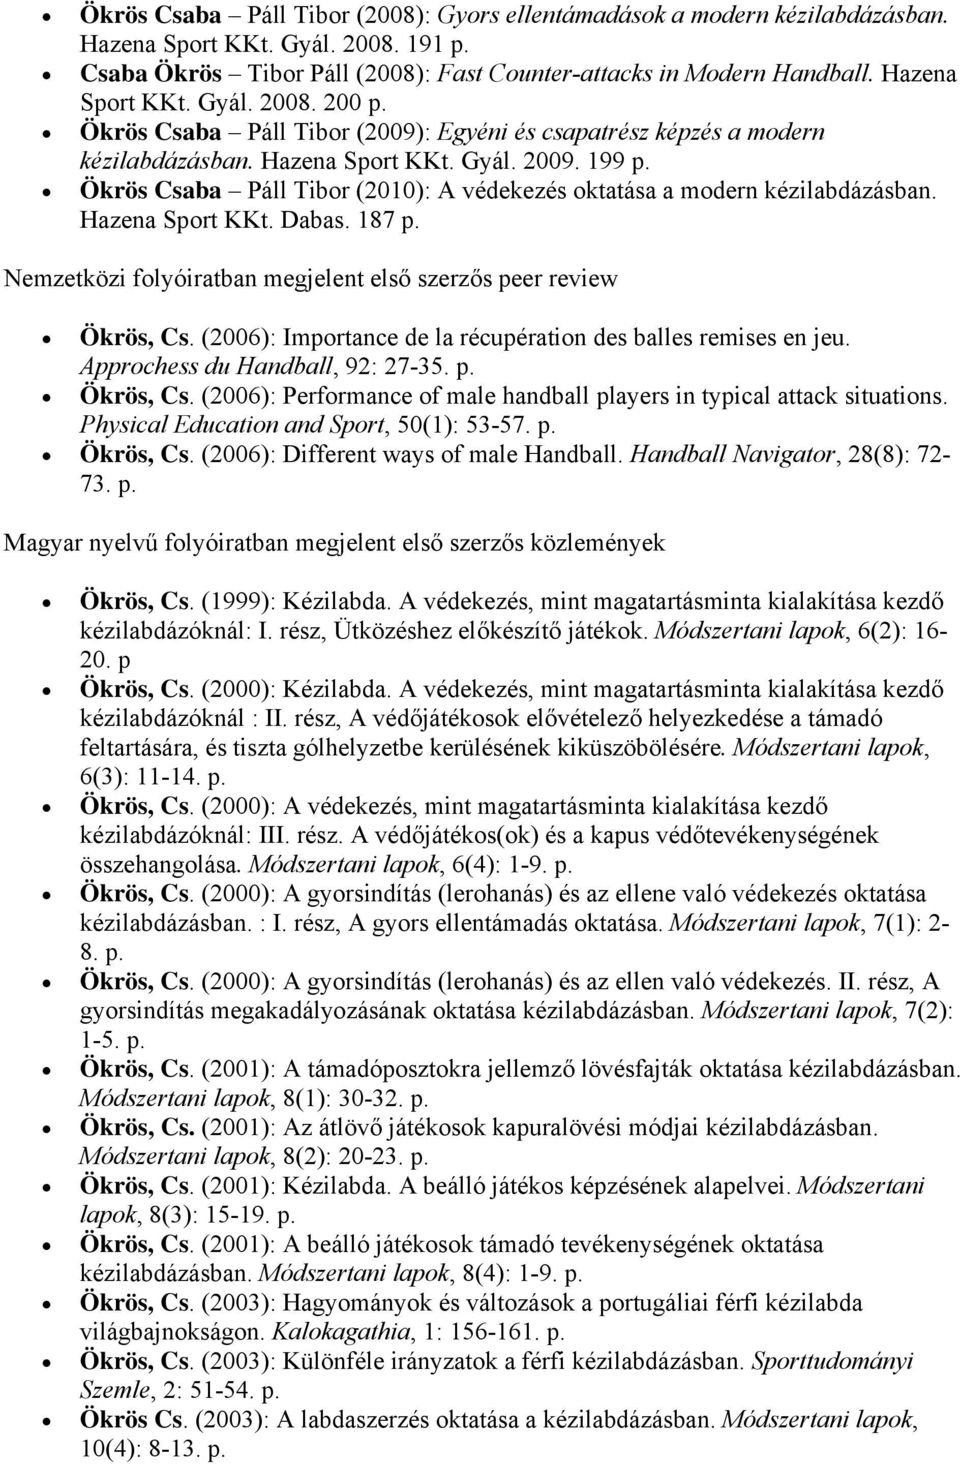 Ökrös Csaba Páll Tibor (2010): A védekezés oktatása a modern kézilabdázásban. Hazena Sport KKt. Dabas. 187 p. Nemzetközi folyóiratban megjelent első szerzős peer review Ökrös, Cs.